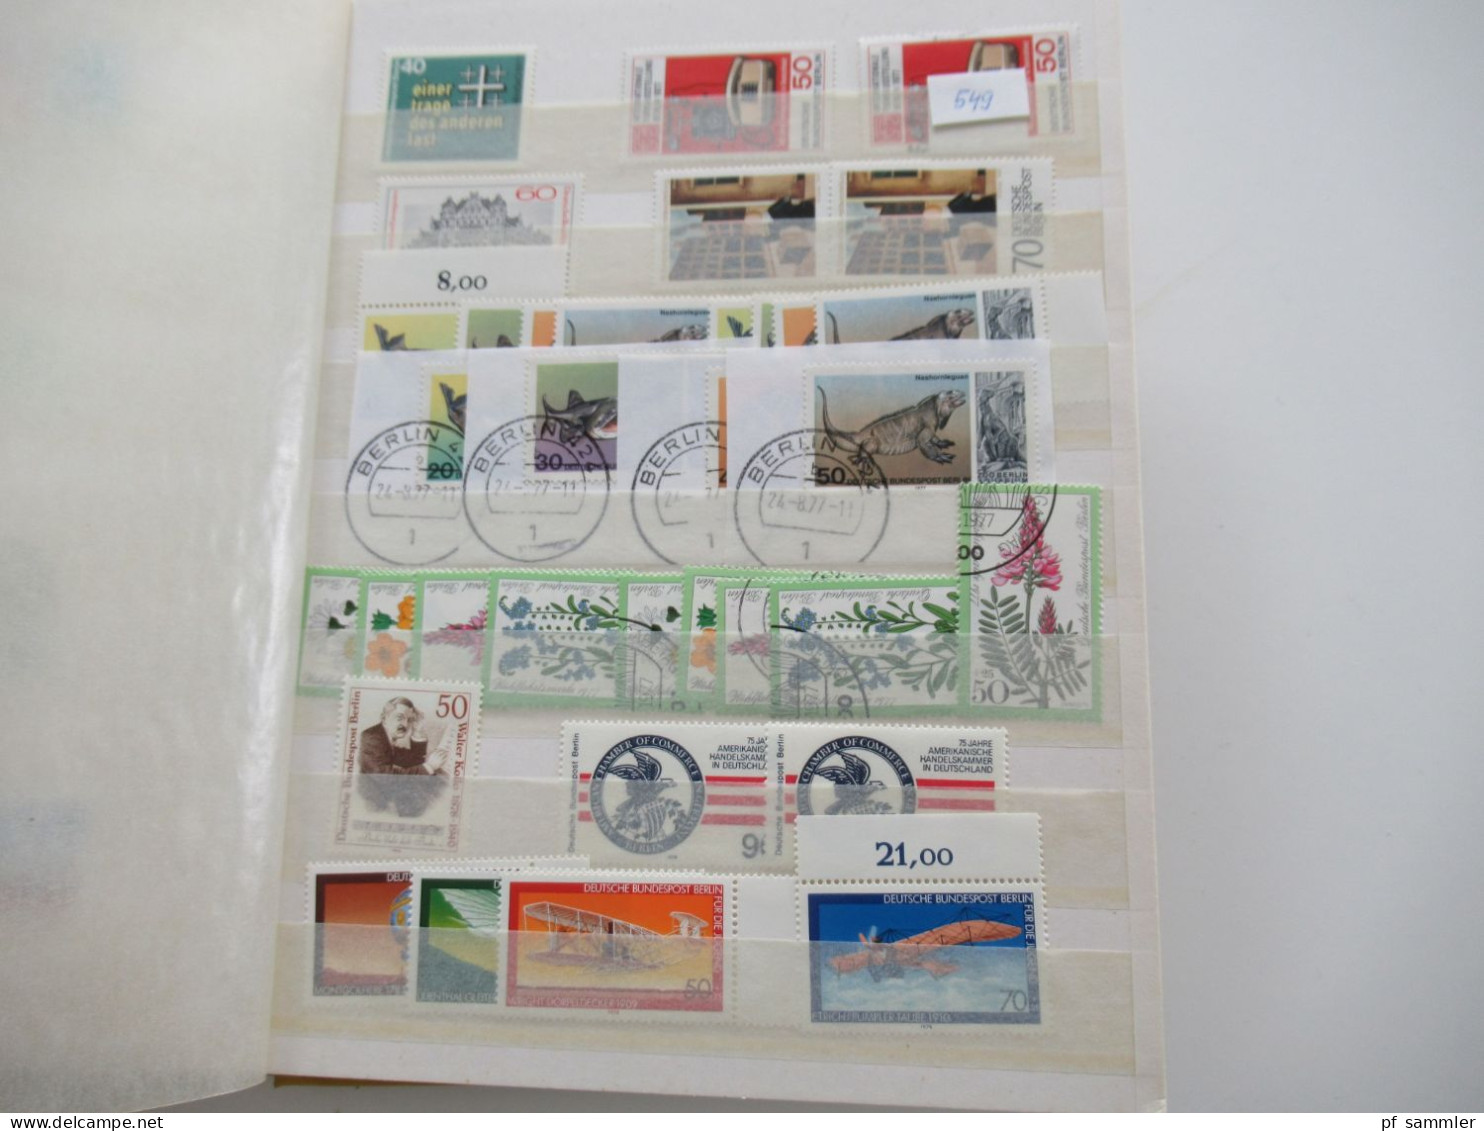 Kleines Steckbuch / Album Berlin ab 1949 - 1984 ab den 60er Jahren gut bestückt / teils mehrfach (Lagerbuch) ** / * / o